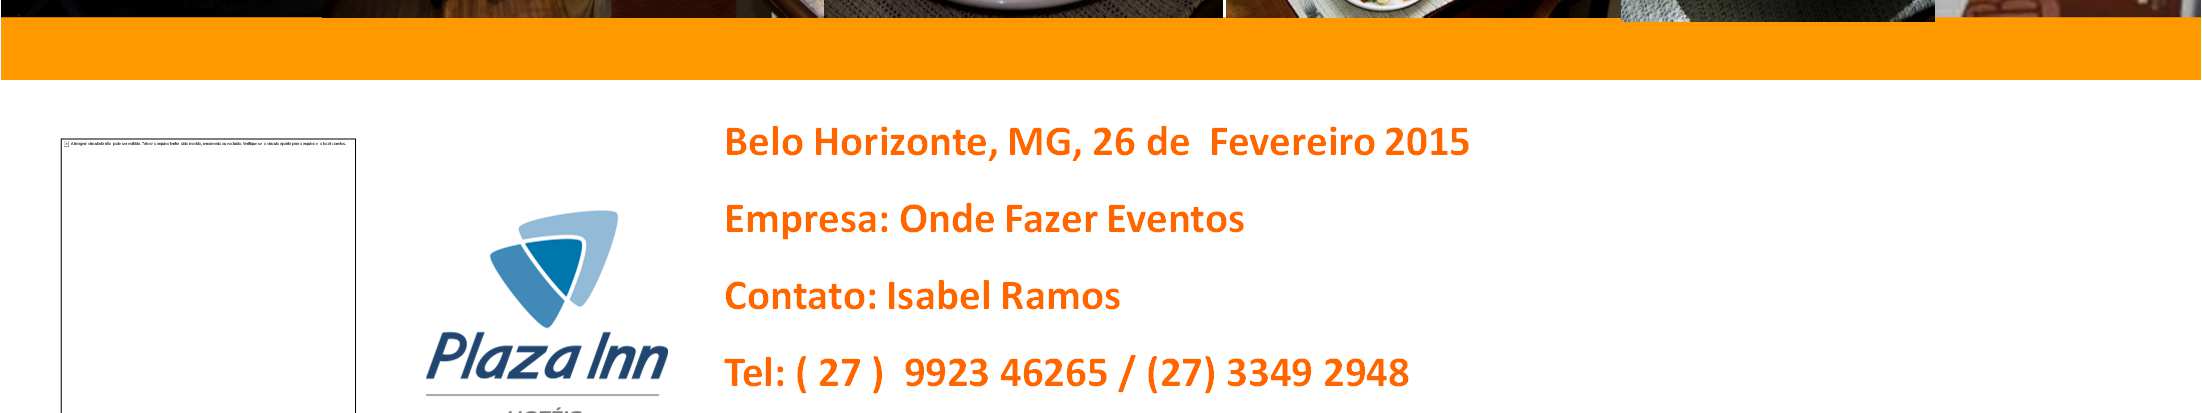 eventos BY MERIT Belo Horizonte, MG, 26 de Fevereiro 2015 Empresa: Onde Fazer Eventos Contato: Isabel Ramos Tel: (27) 992346265 /(27) 33492948 Email: BRISTOL MERIT HOTEL BELO HORIZONTE MINAS